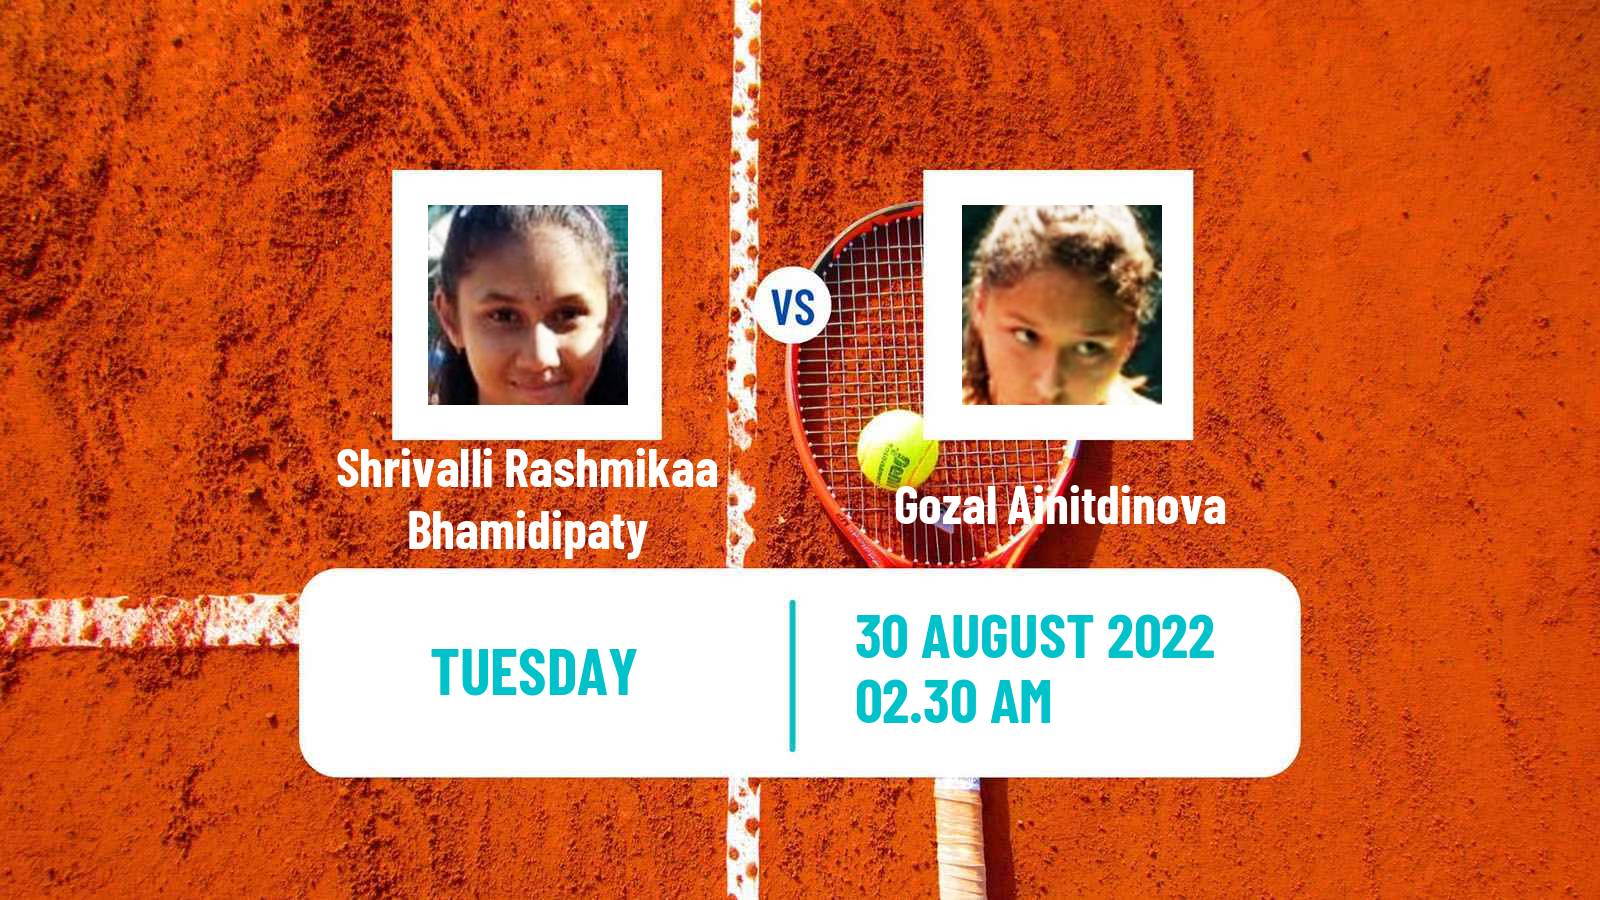 Tennis ITF Tournaments Shrivalli Rashmikaa Bhamidipaty - Gozal Ainitdinova